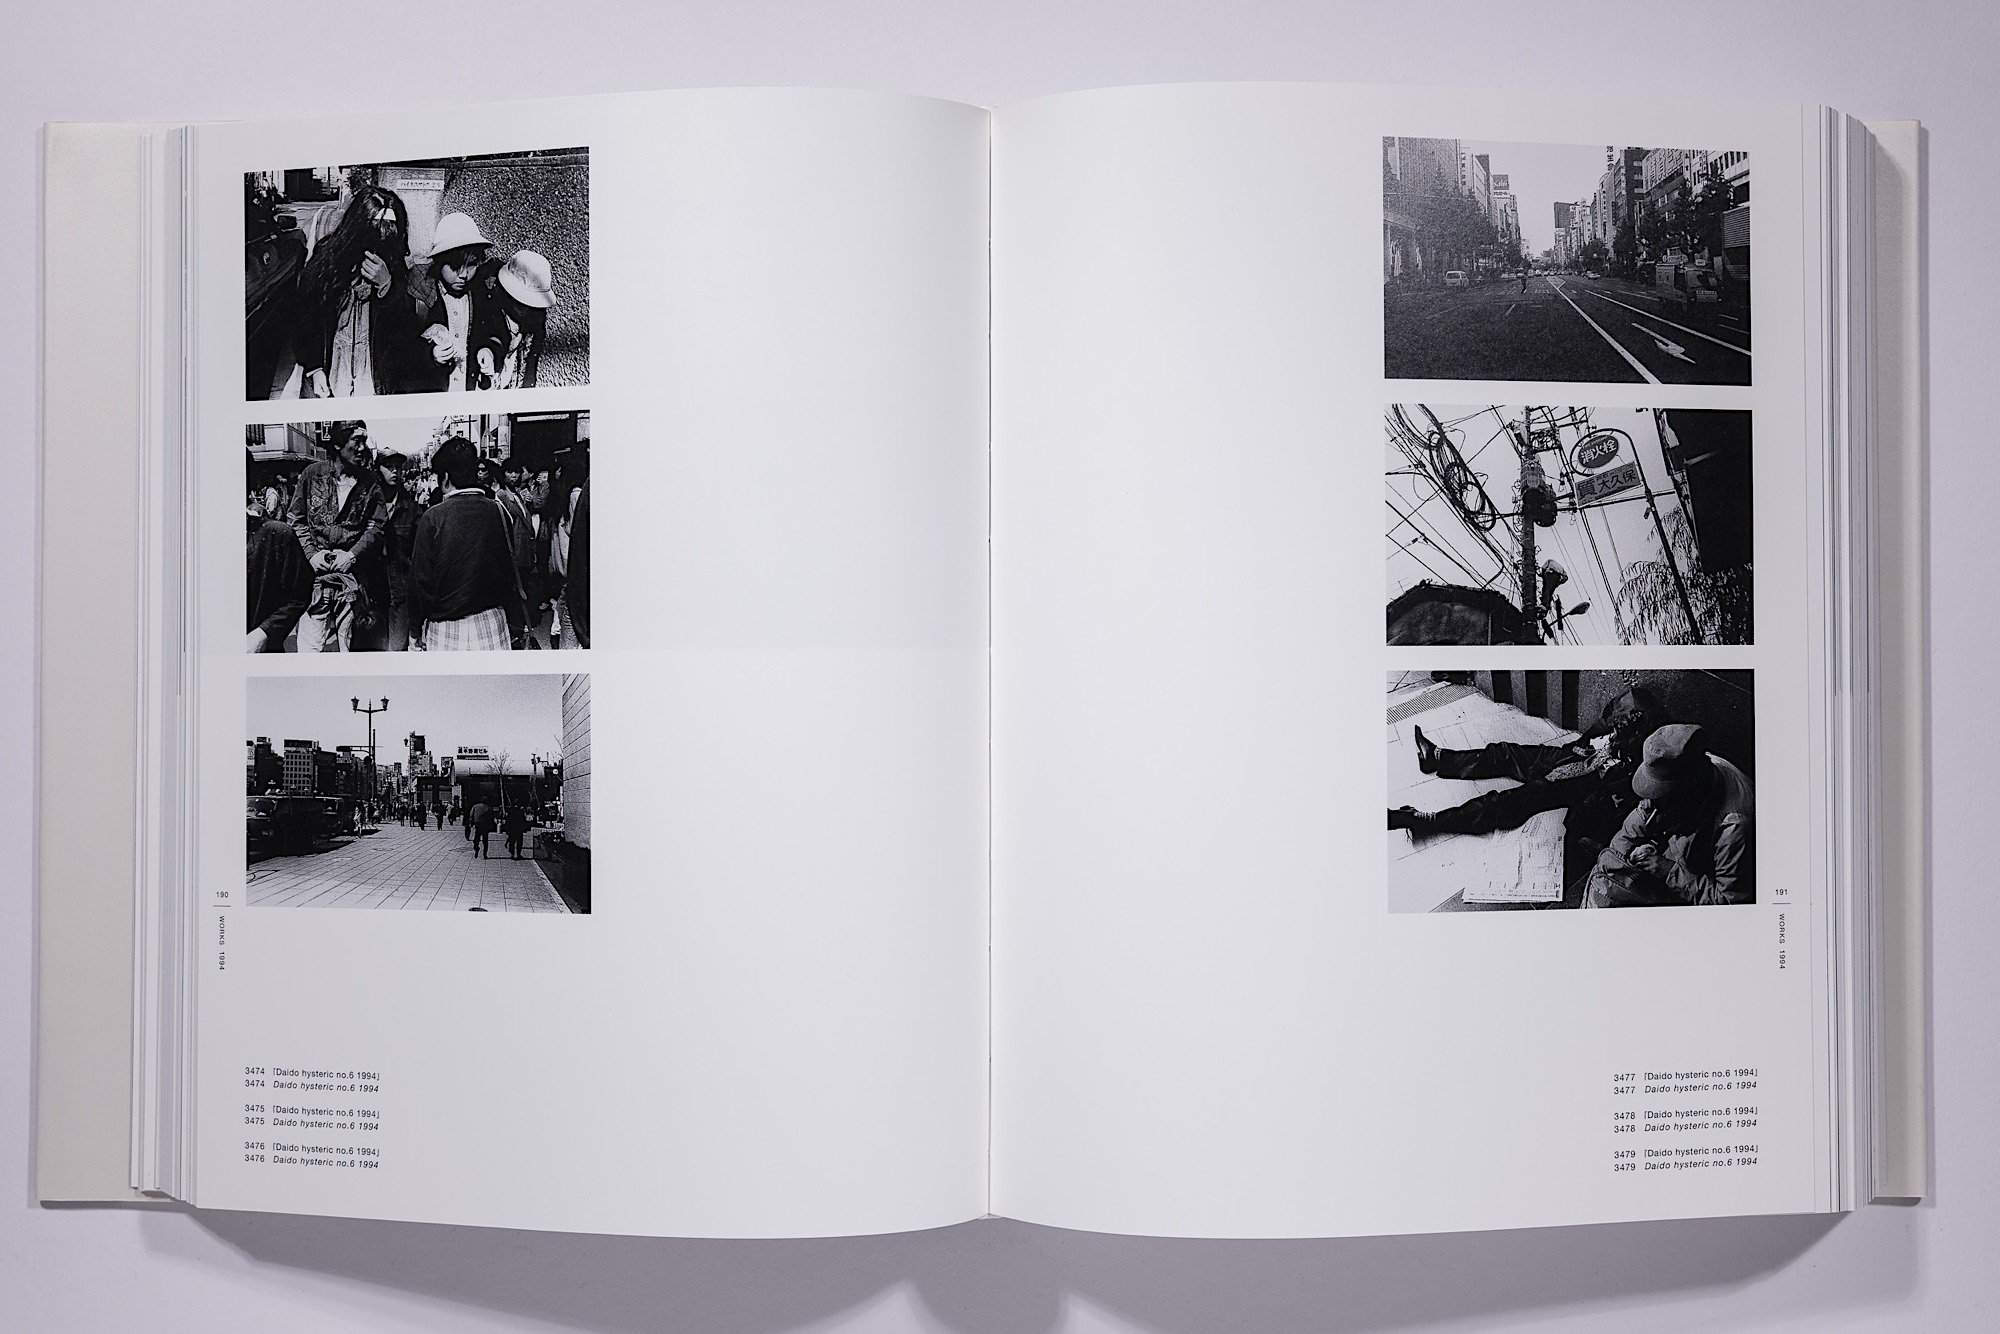 Daido Moriyama - The Complete Works of Daido Moriyama Image 27